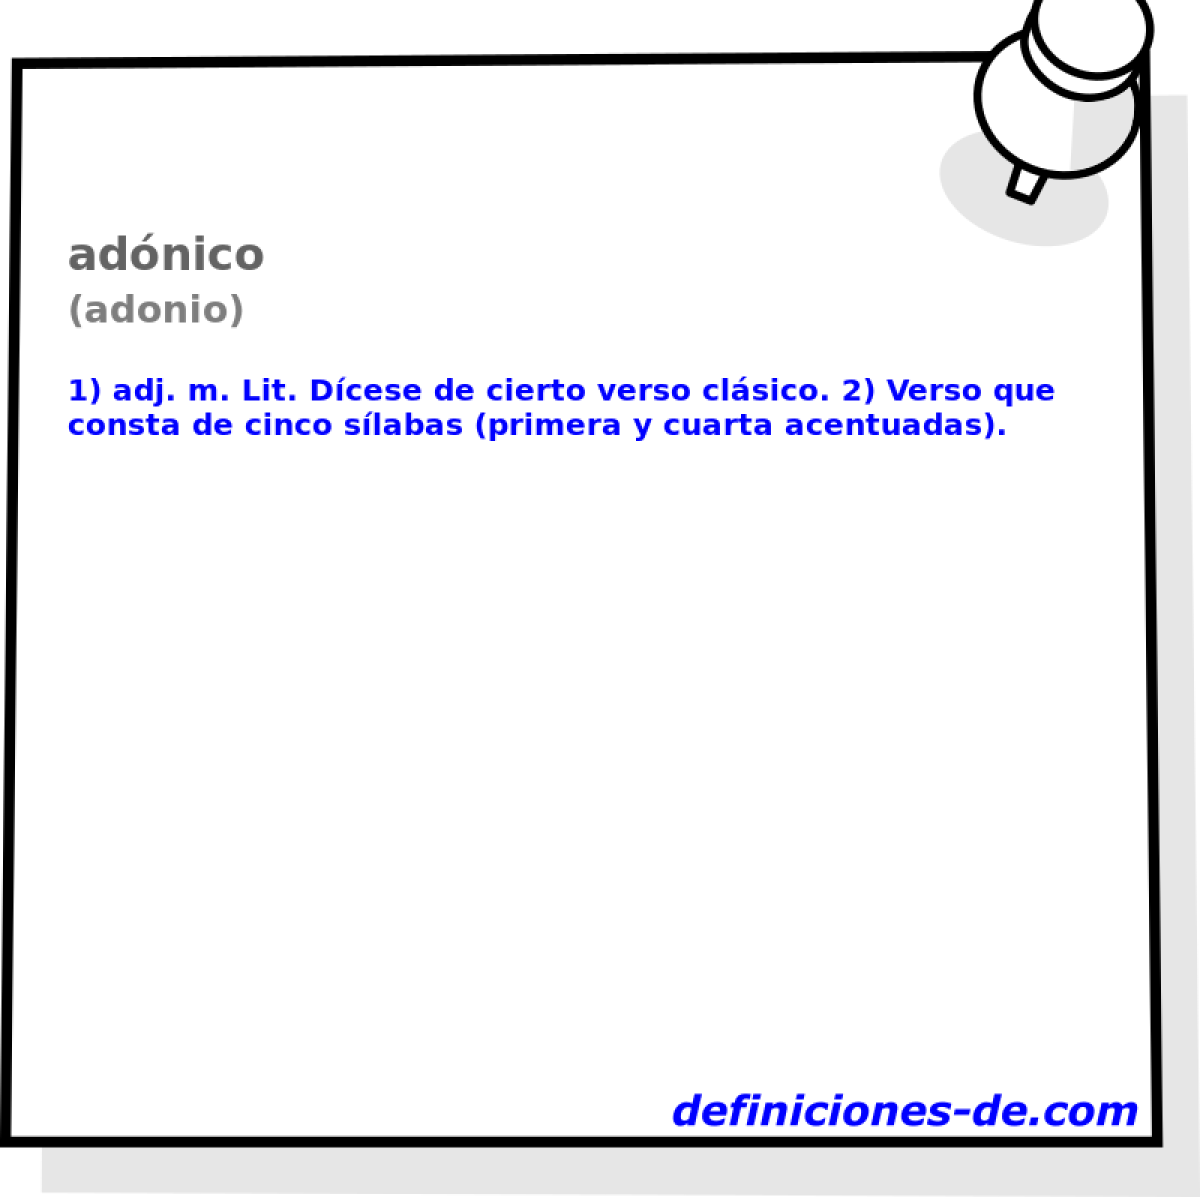 adnico (adonio)